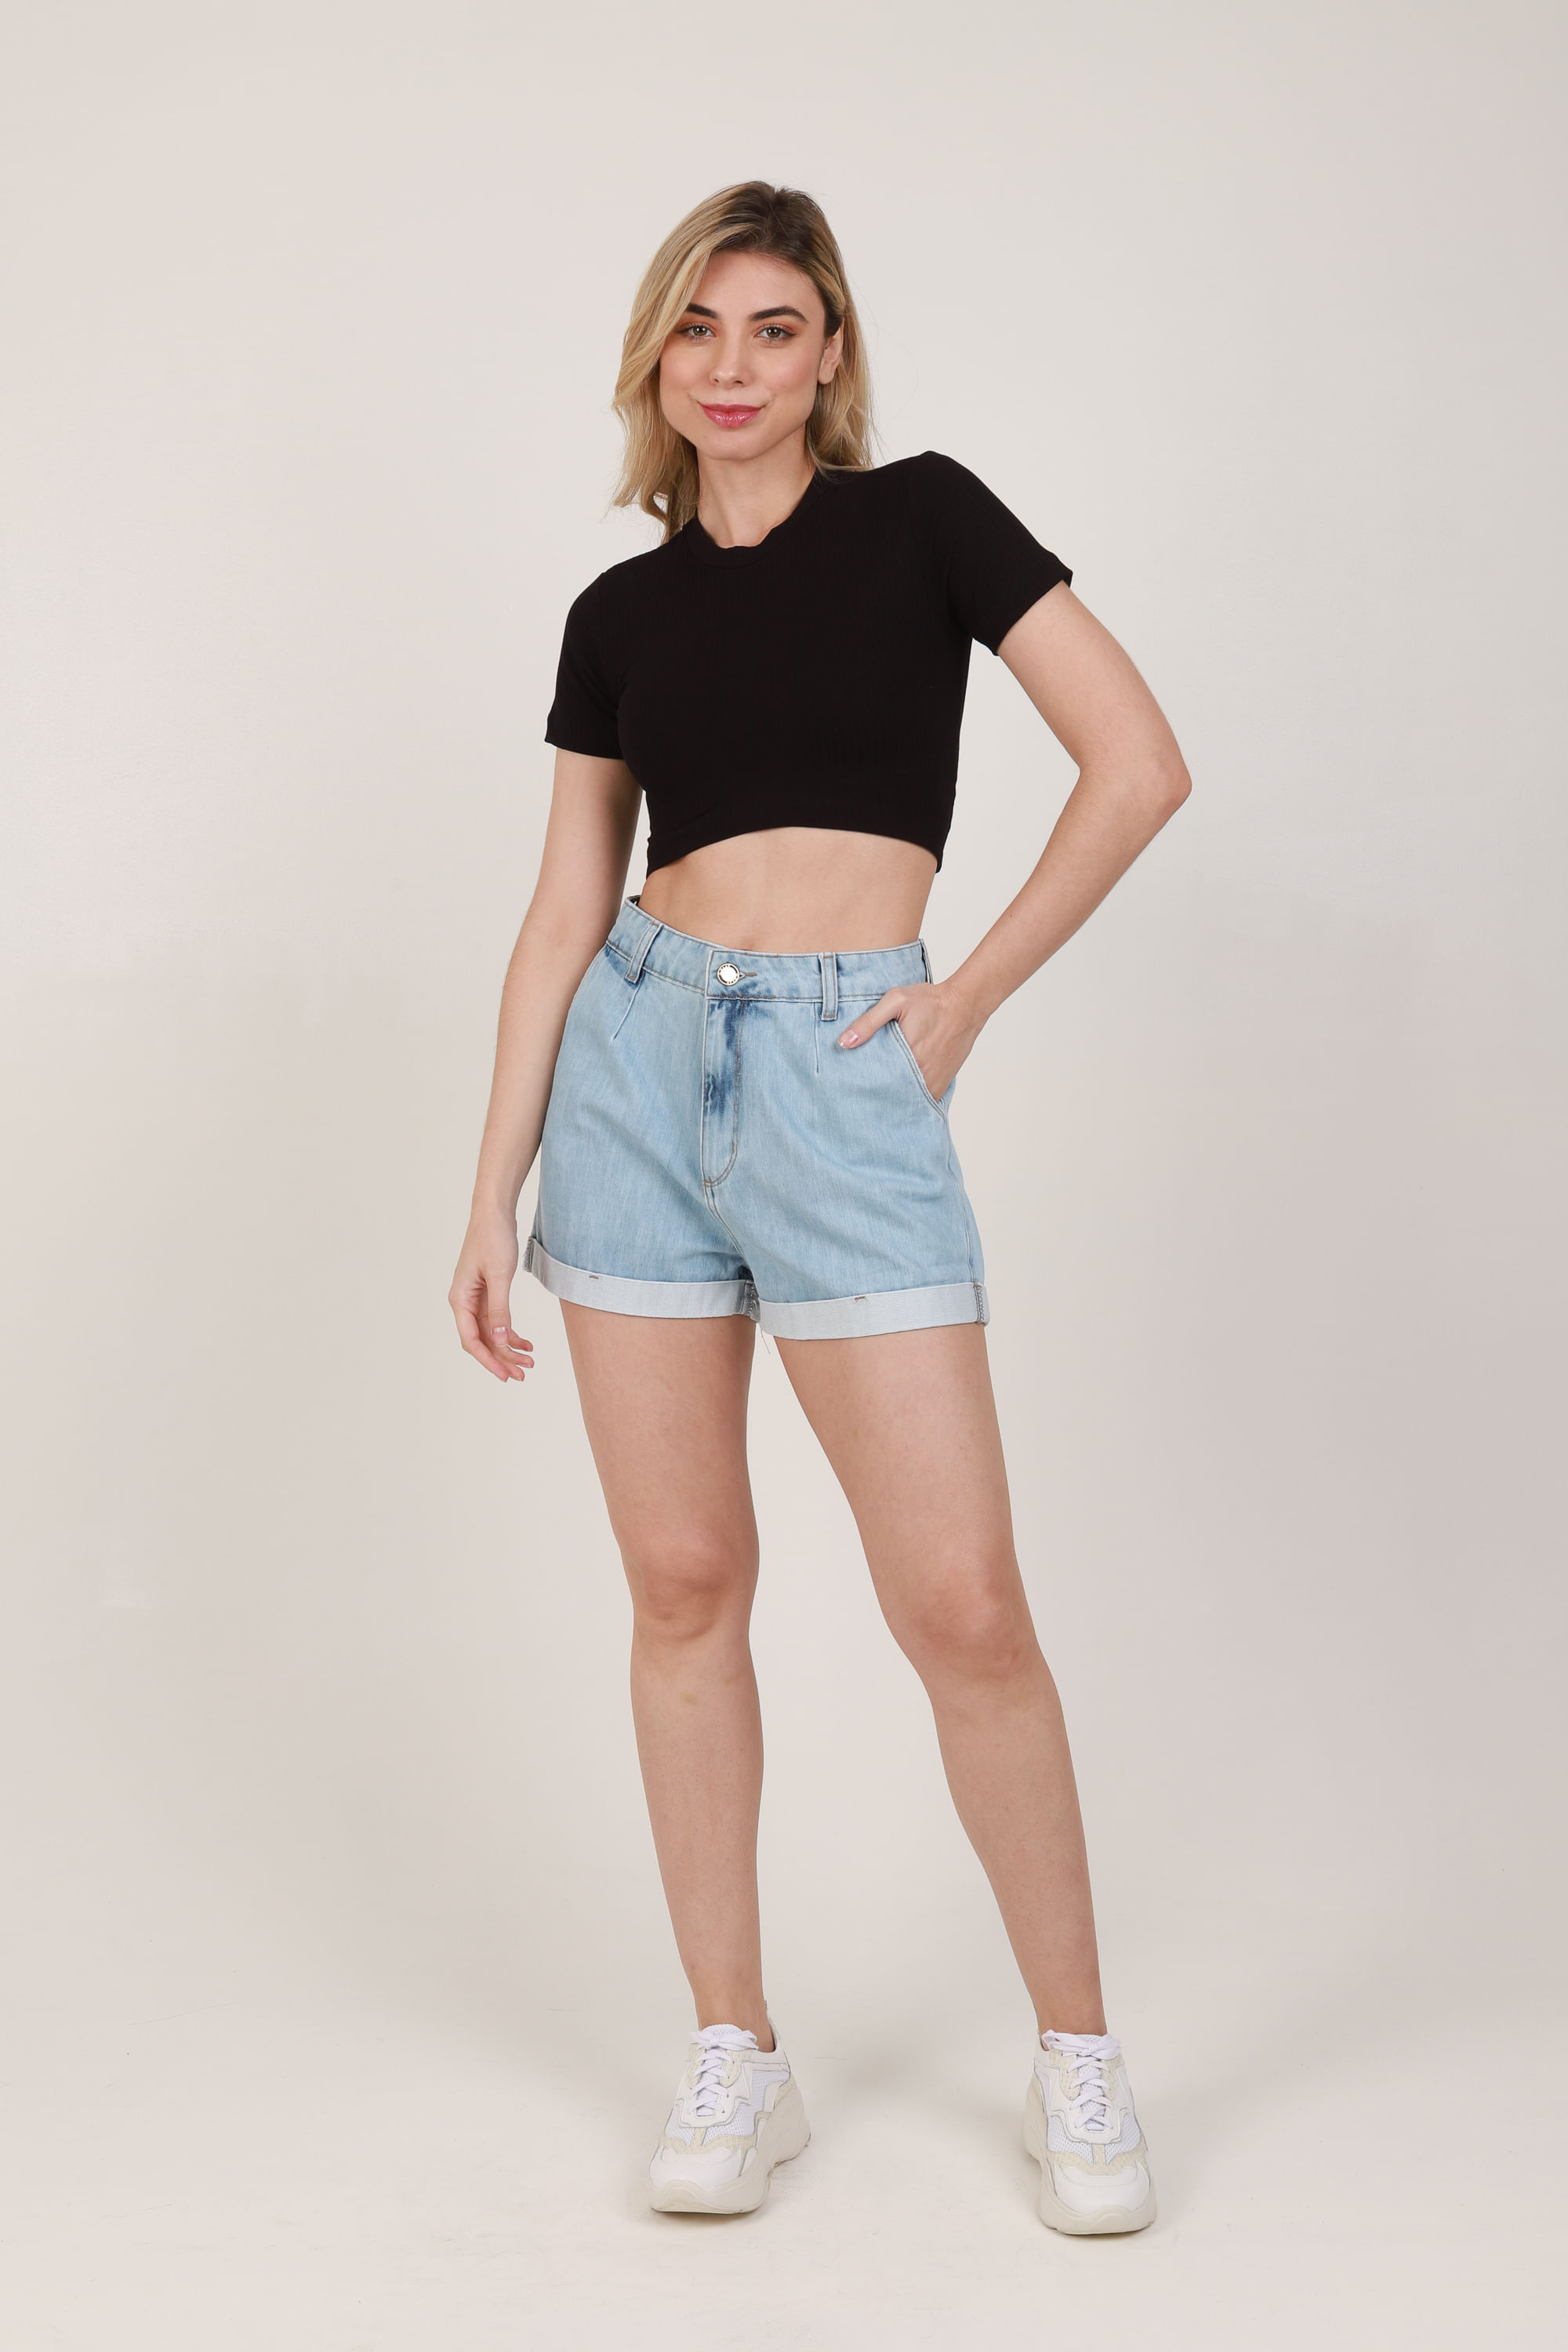 short jeans feminino mom cintura super alta com bolsos e elástico azul  médio - C&A